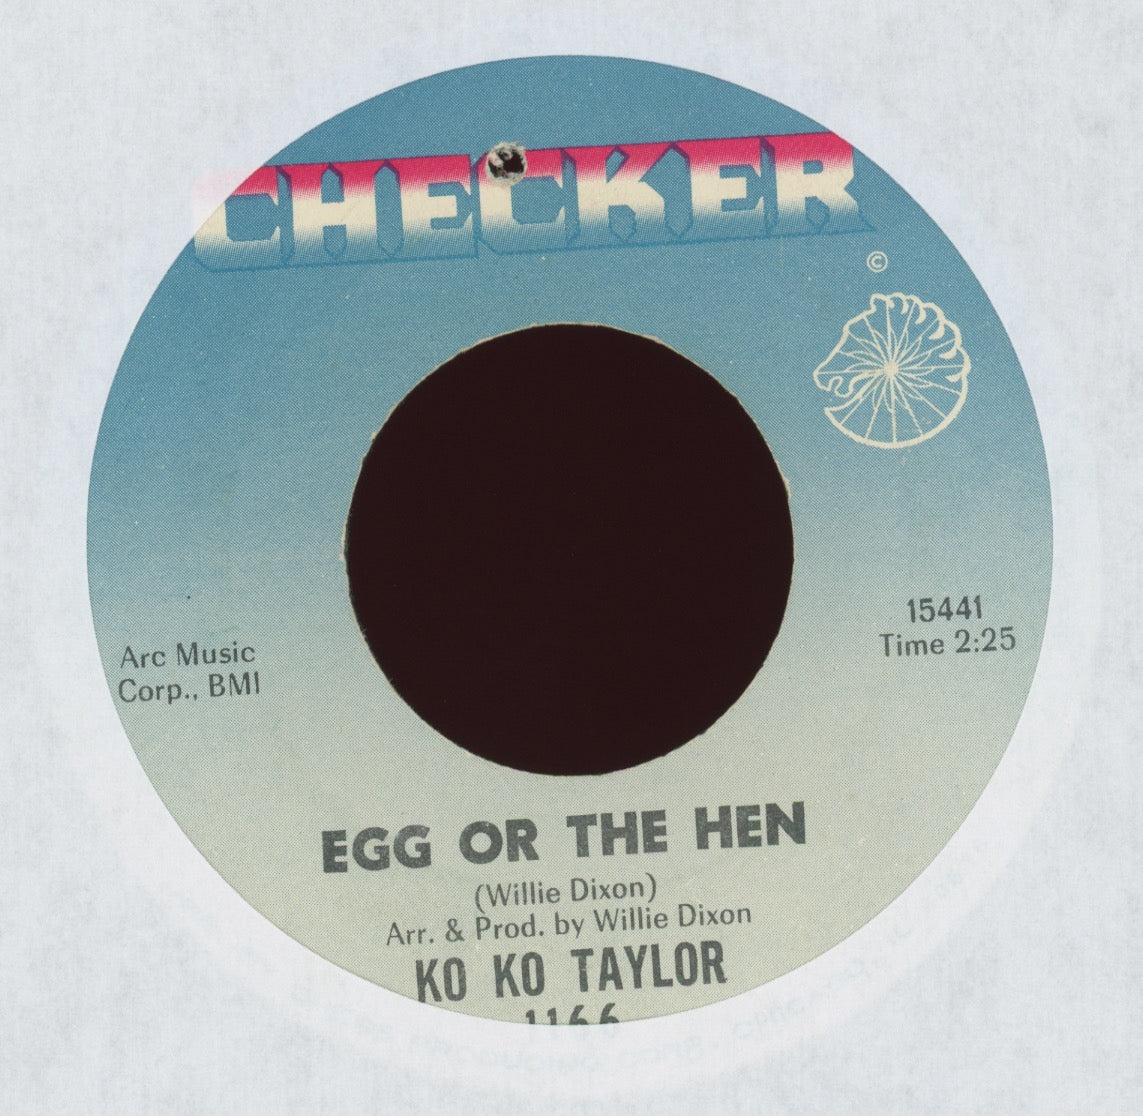 Koko Taylor - Egg Or The Hen on Checker